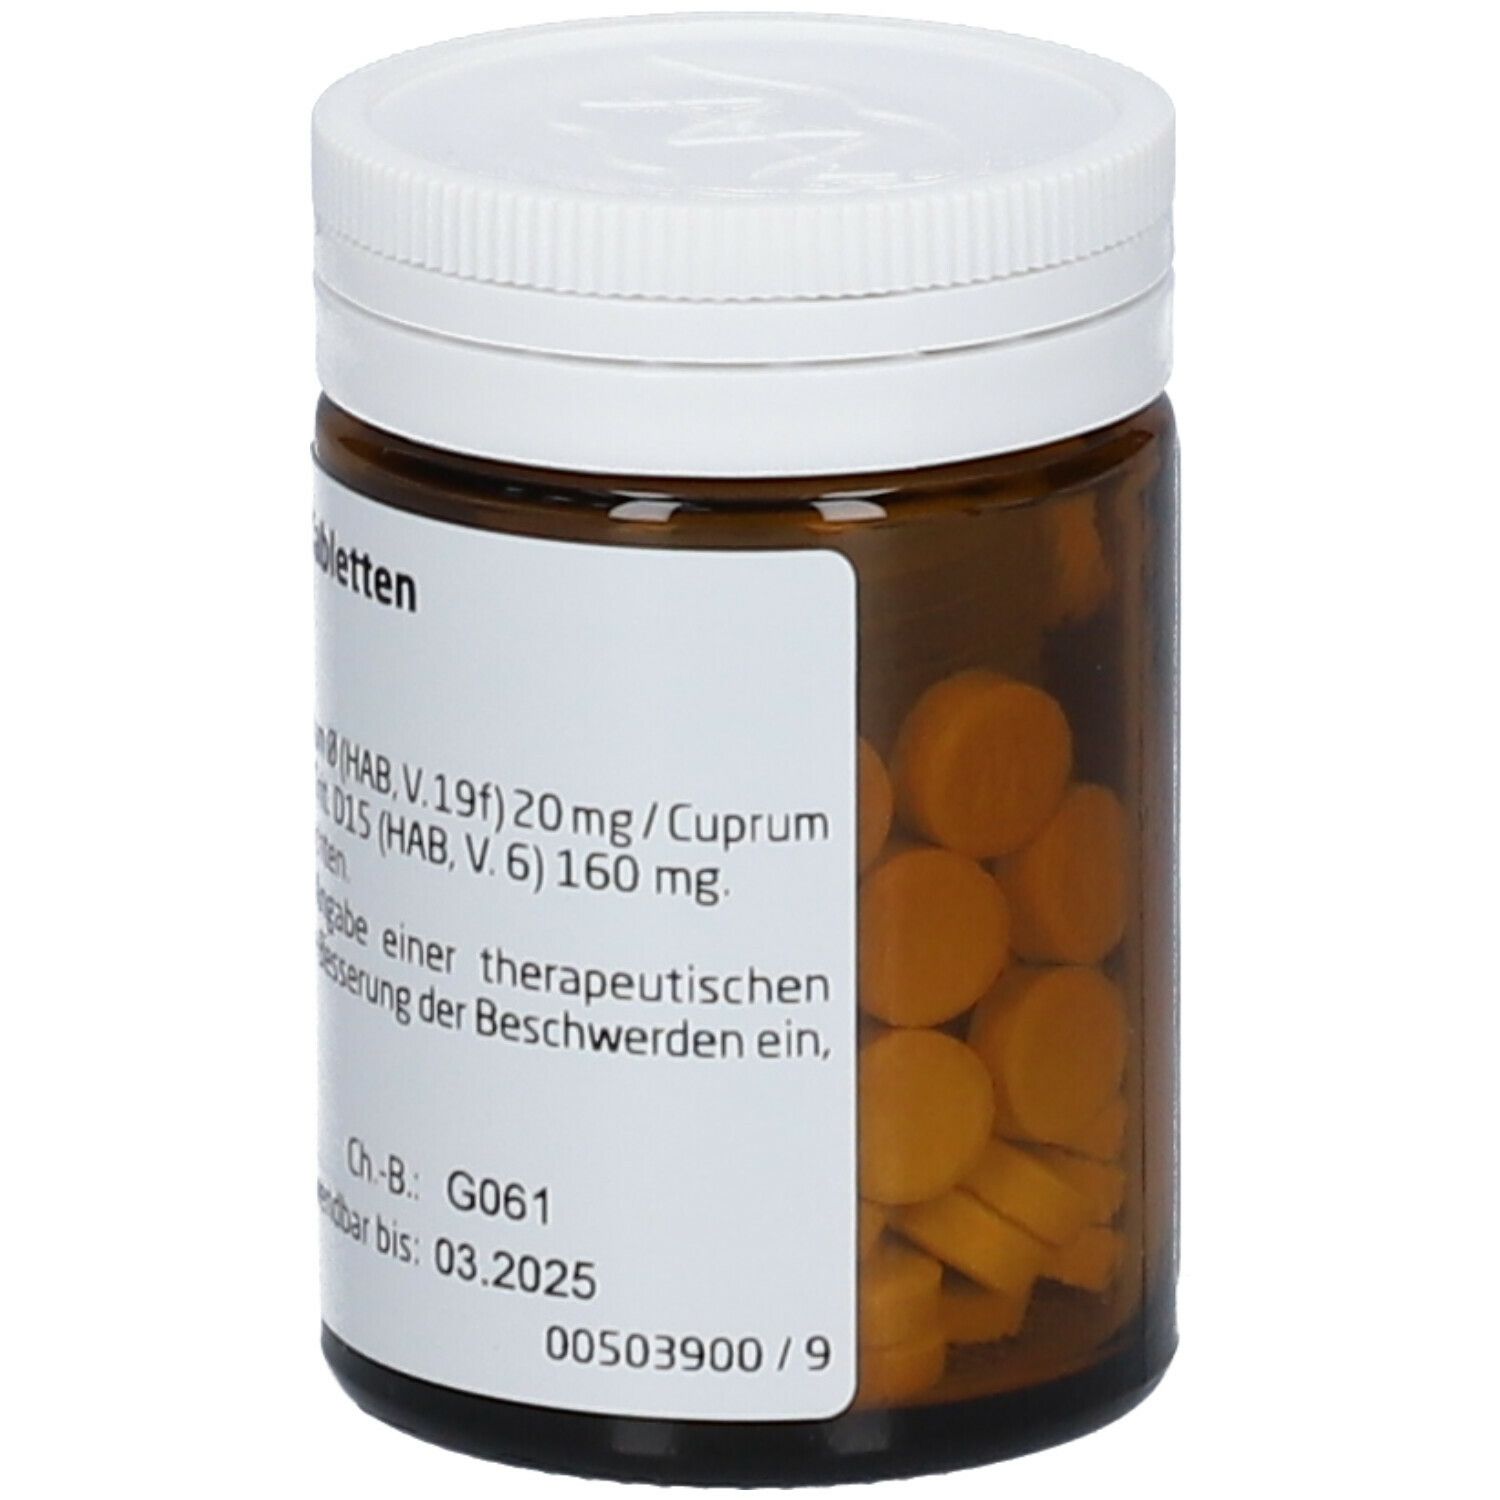 Cuprum Sulfuriucm comp. Tabletten